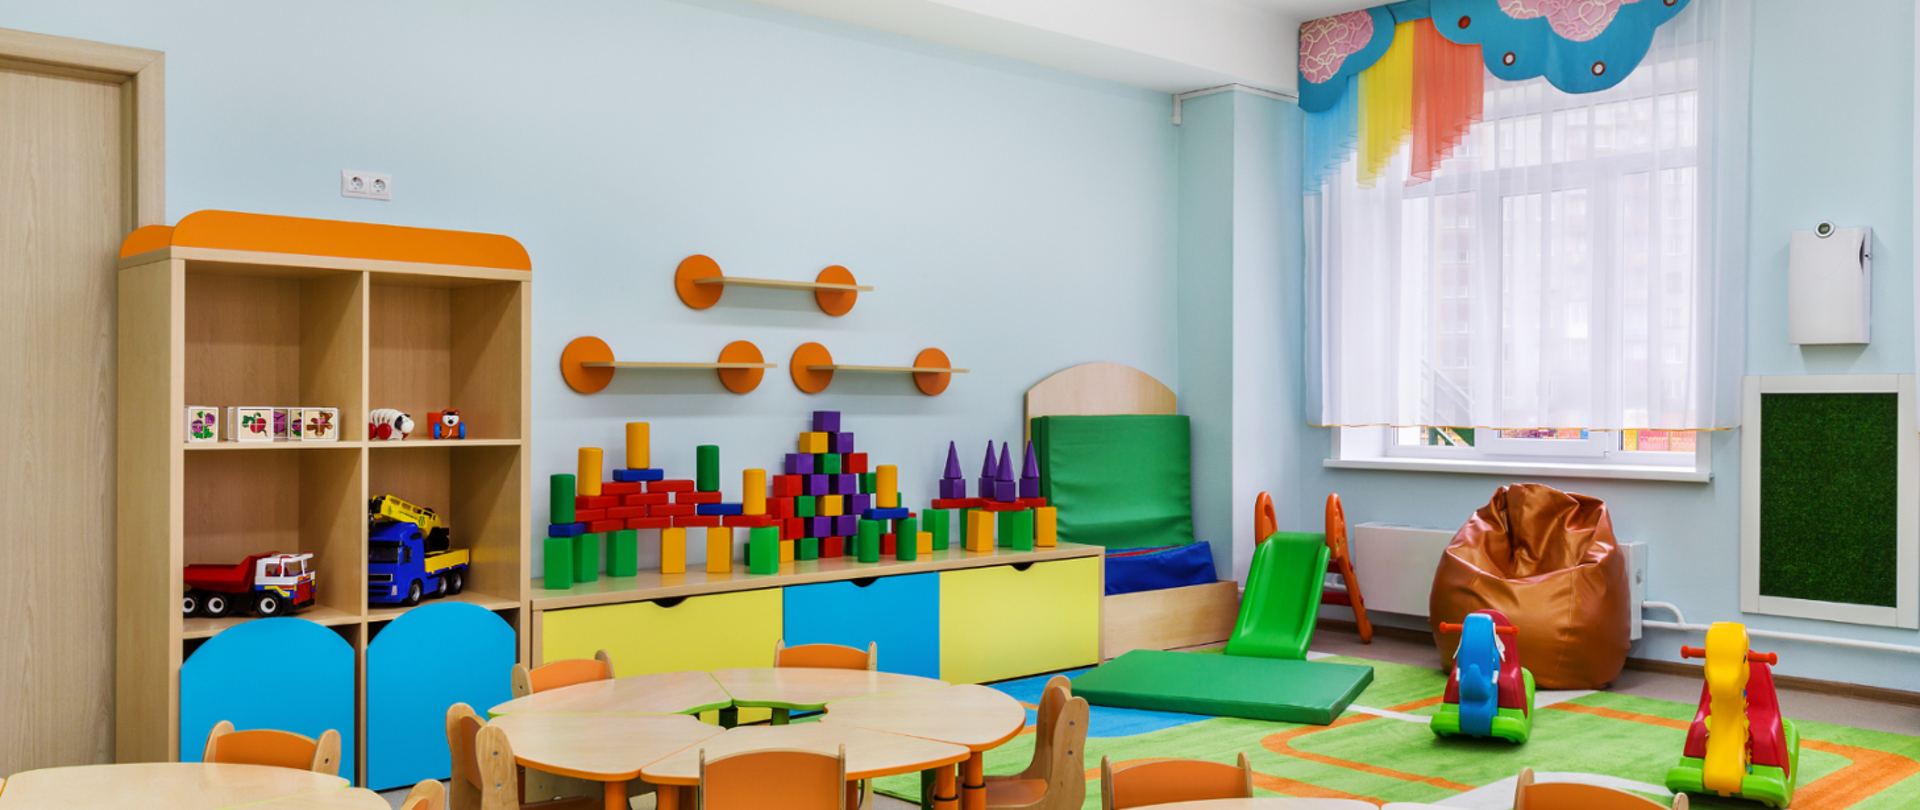 Widok sali przedszkolnej: na pierwszym planie okrągłe stoliki i krzesełka z prawej strony zabawki dziecięce. Za stolikami meble z zabawkami dla dzieci. Wszystko w żywych kolorach.